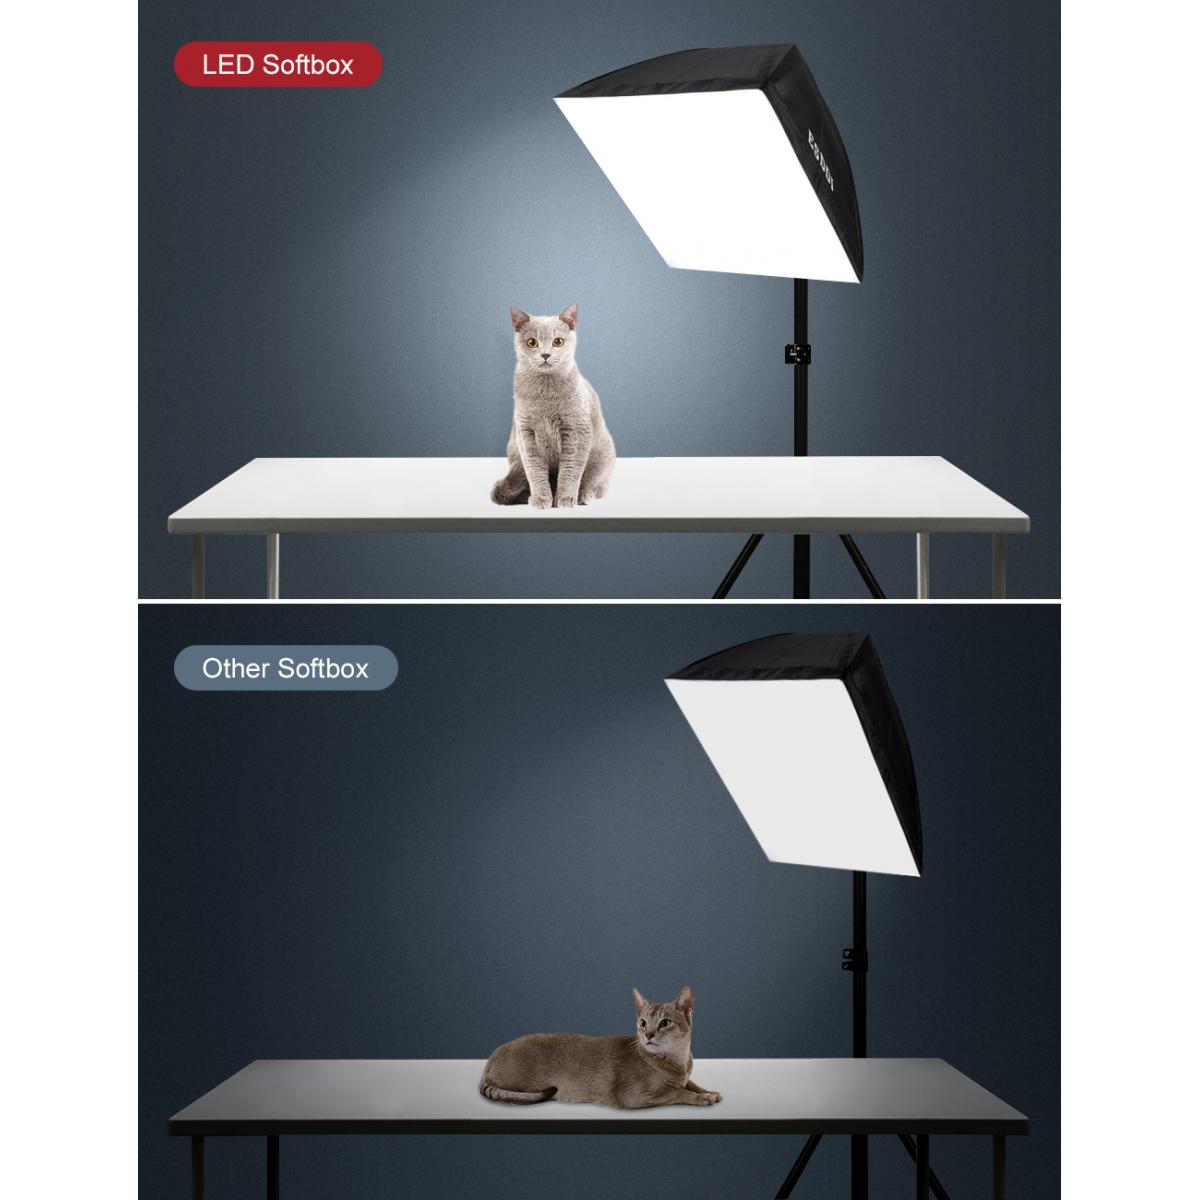 Generik Softbox Eclairage Video ESDDI PS070 Kit Photographie 900W avec 2 Ampoules LED 5400K Prise E27 et 2 Réflecteurs 50 x 50 cm pour la Portrait Produit Photographie de Mode et Video